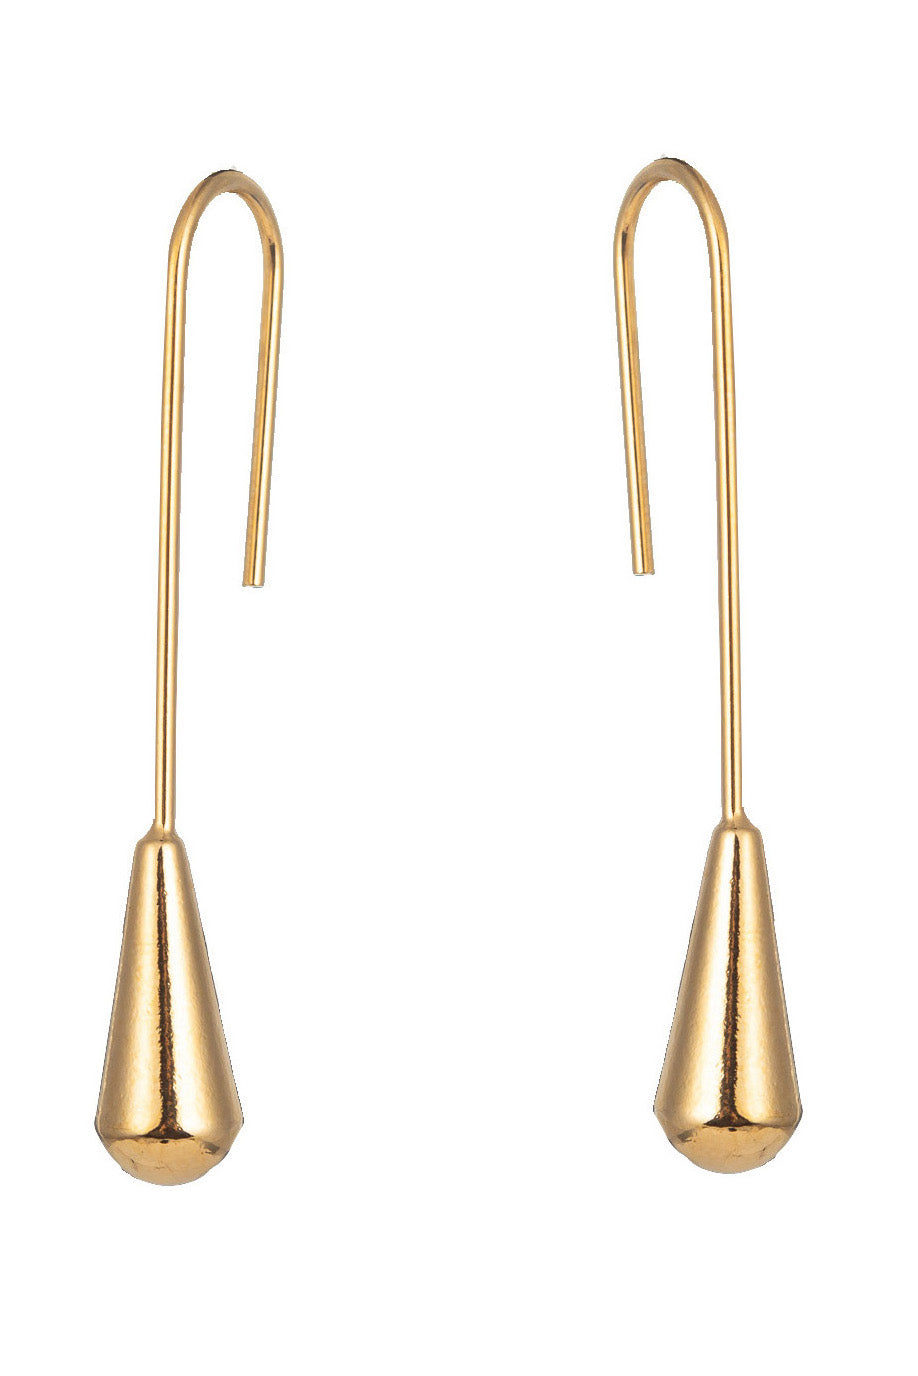 Gold tone brass drop earrings. 